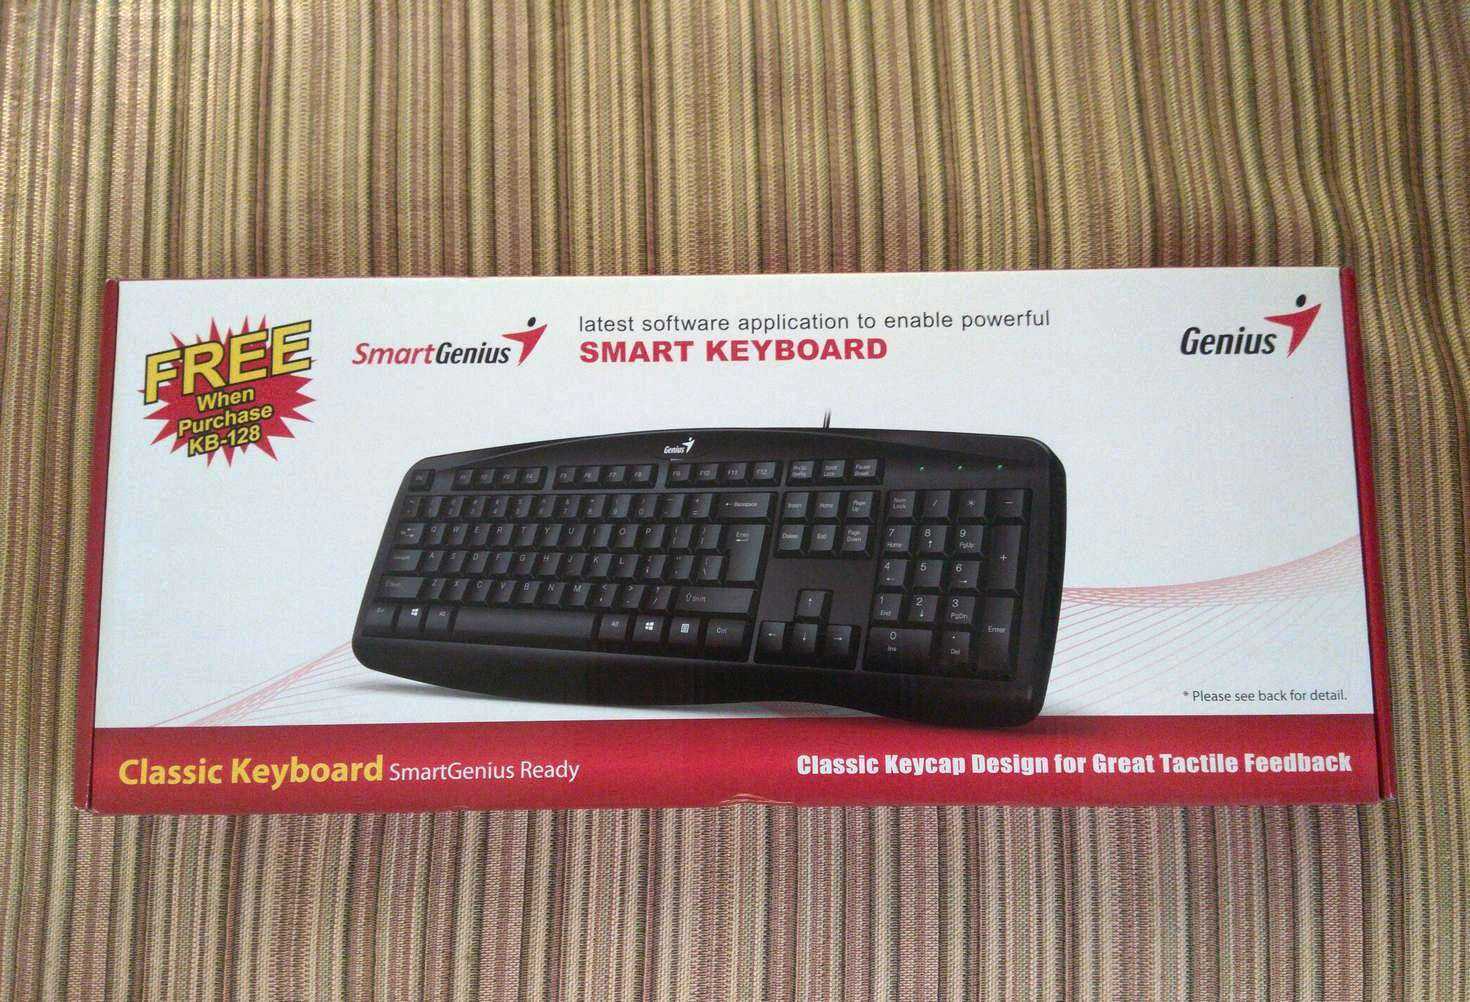 Клавиатура genius kb-m205 red — купить, цена и характеристики, отзывы